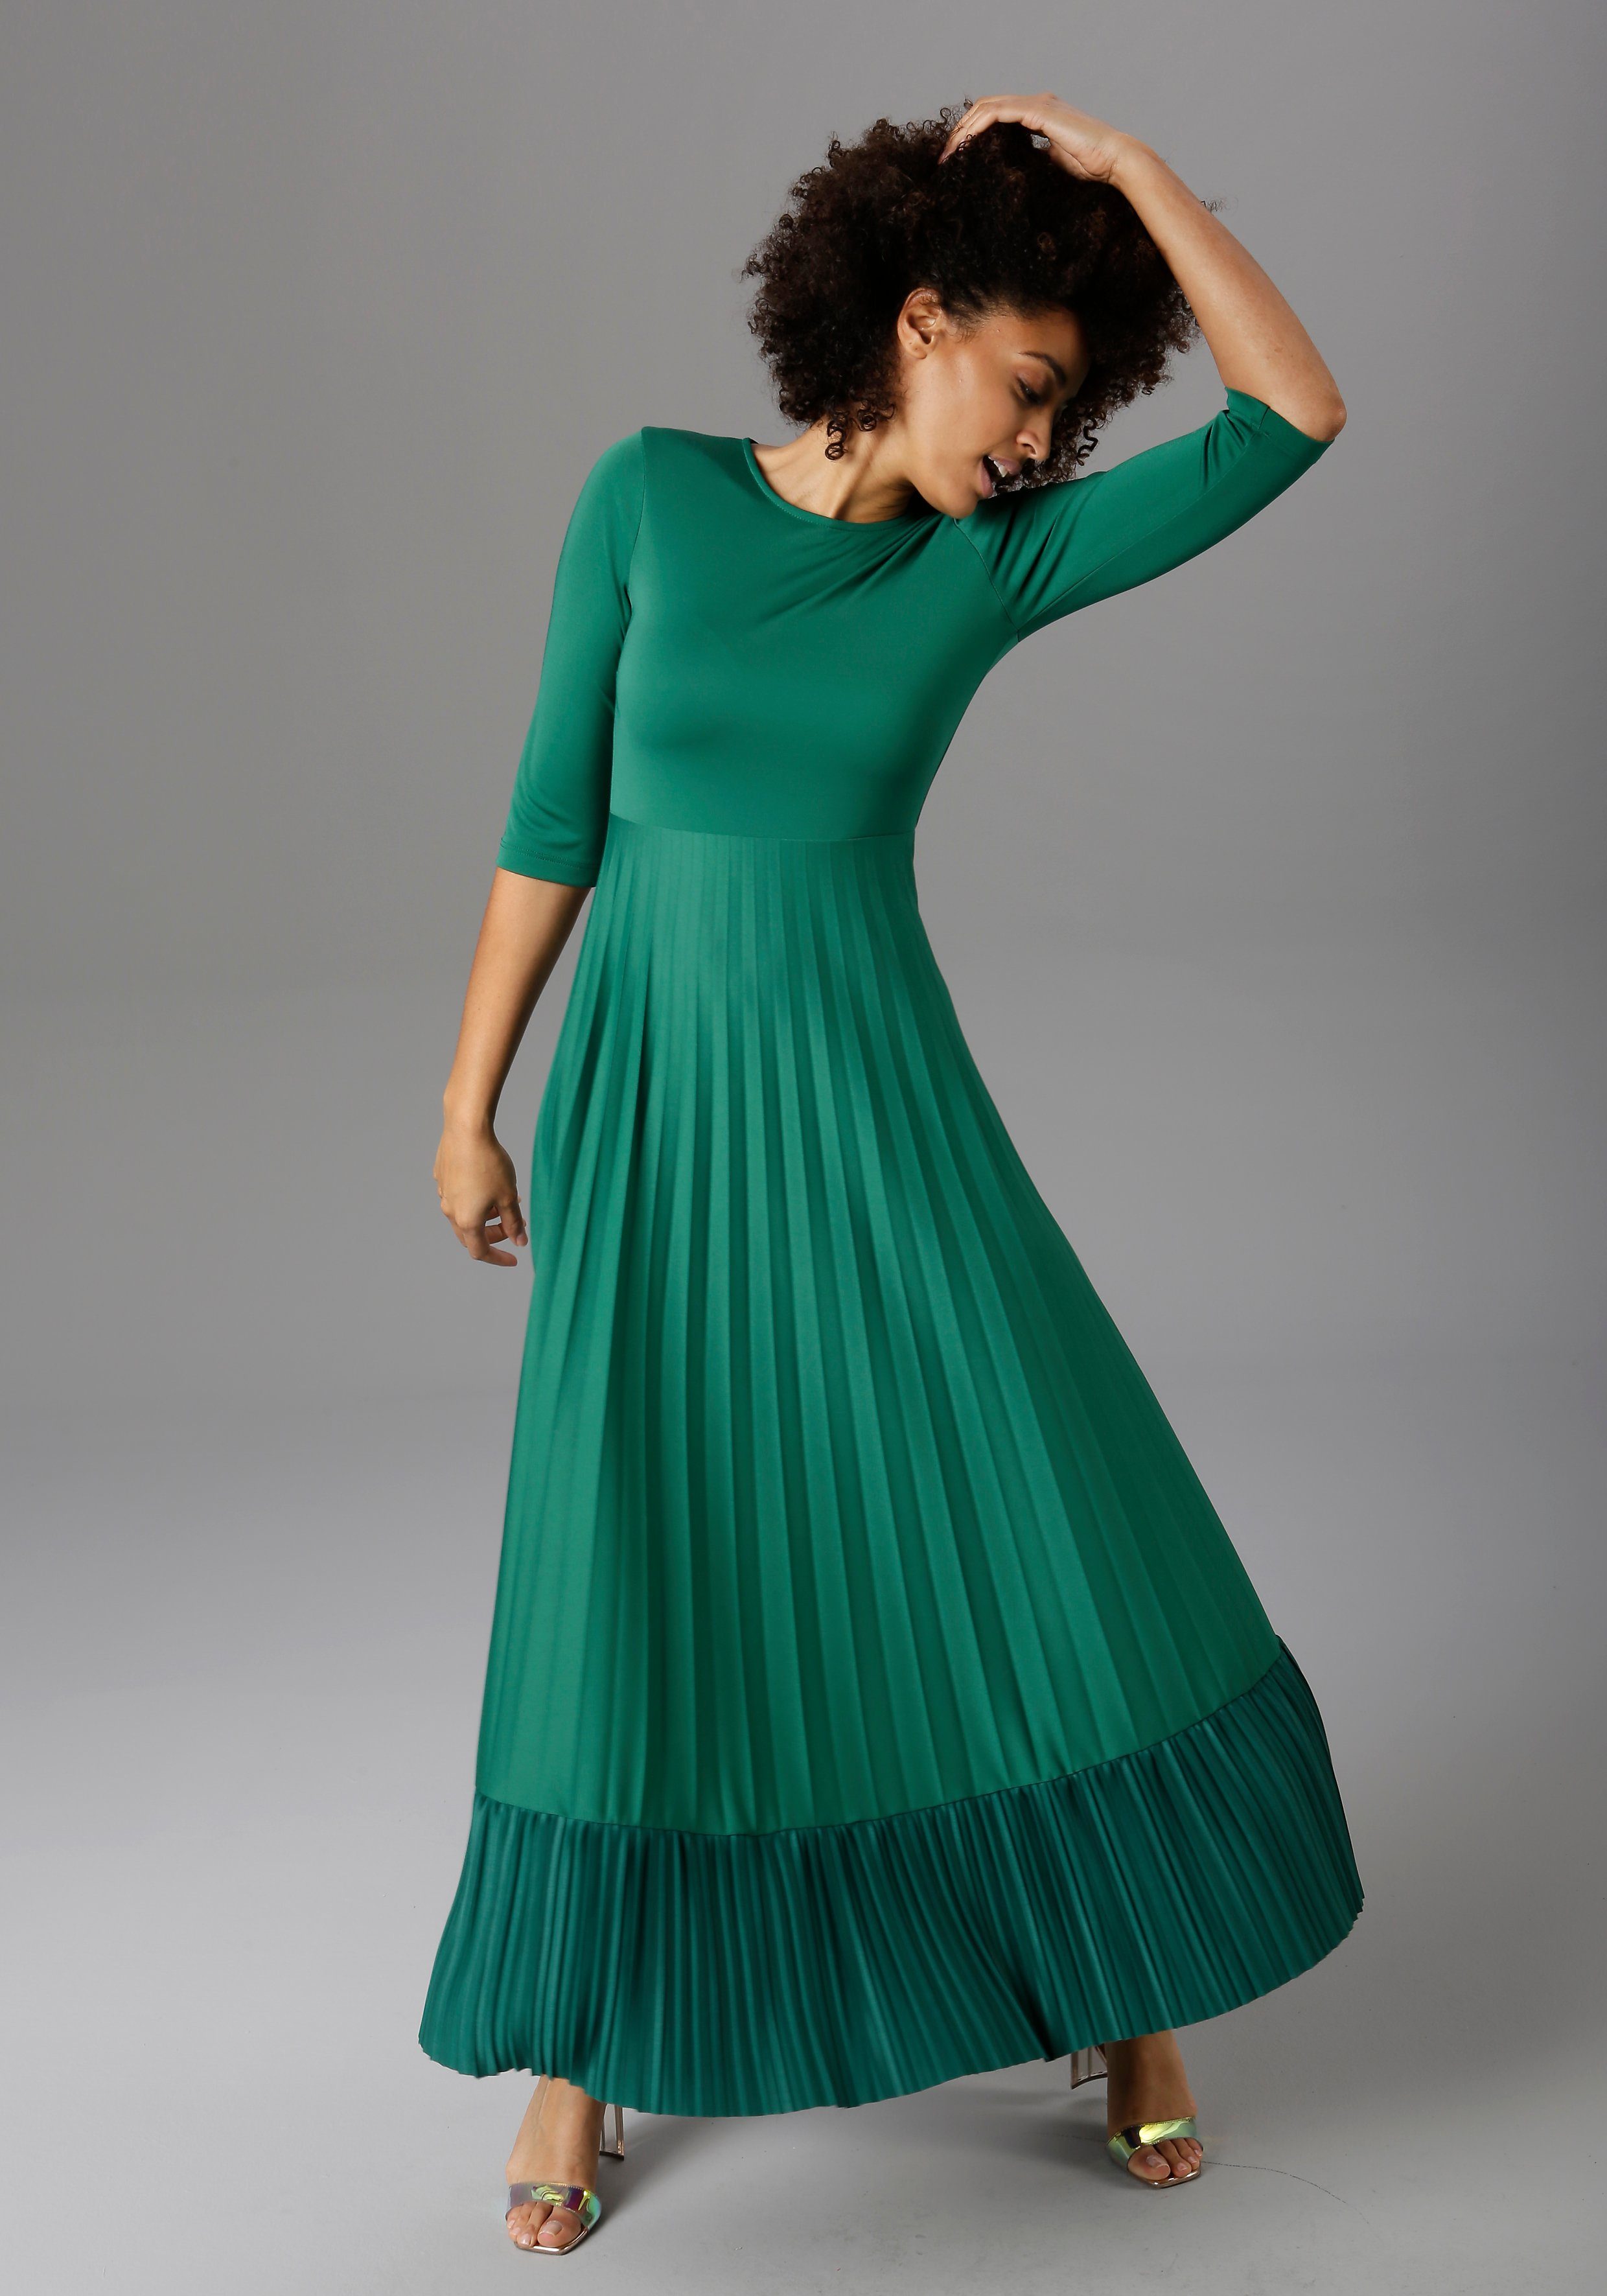 Grünes Kleid online kaufen | OTTO